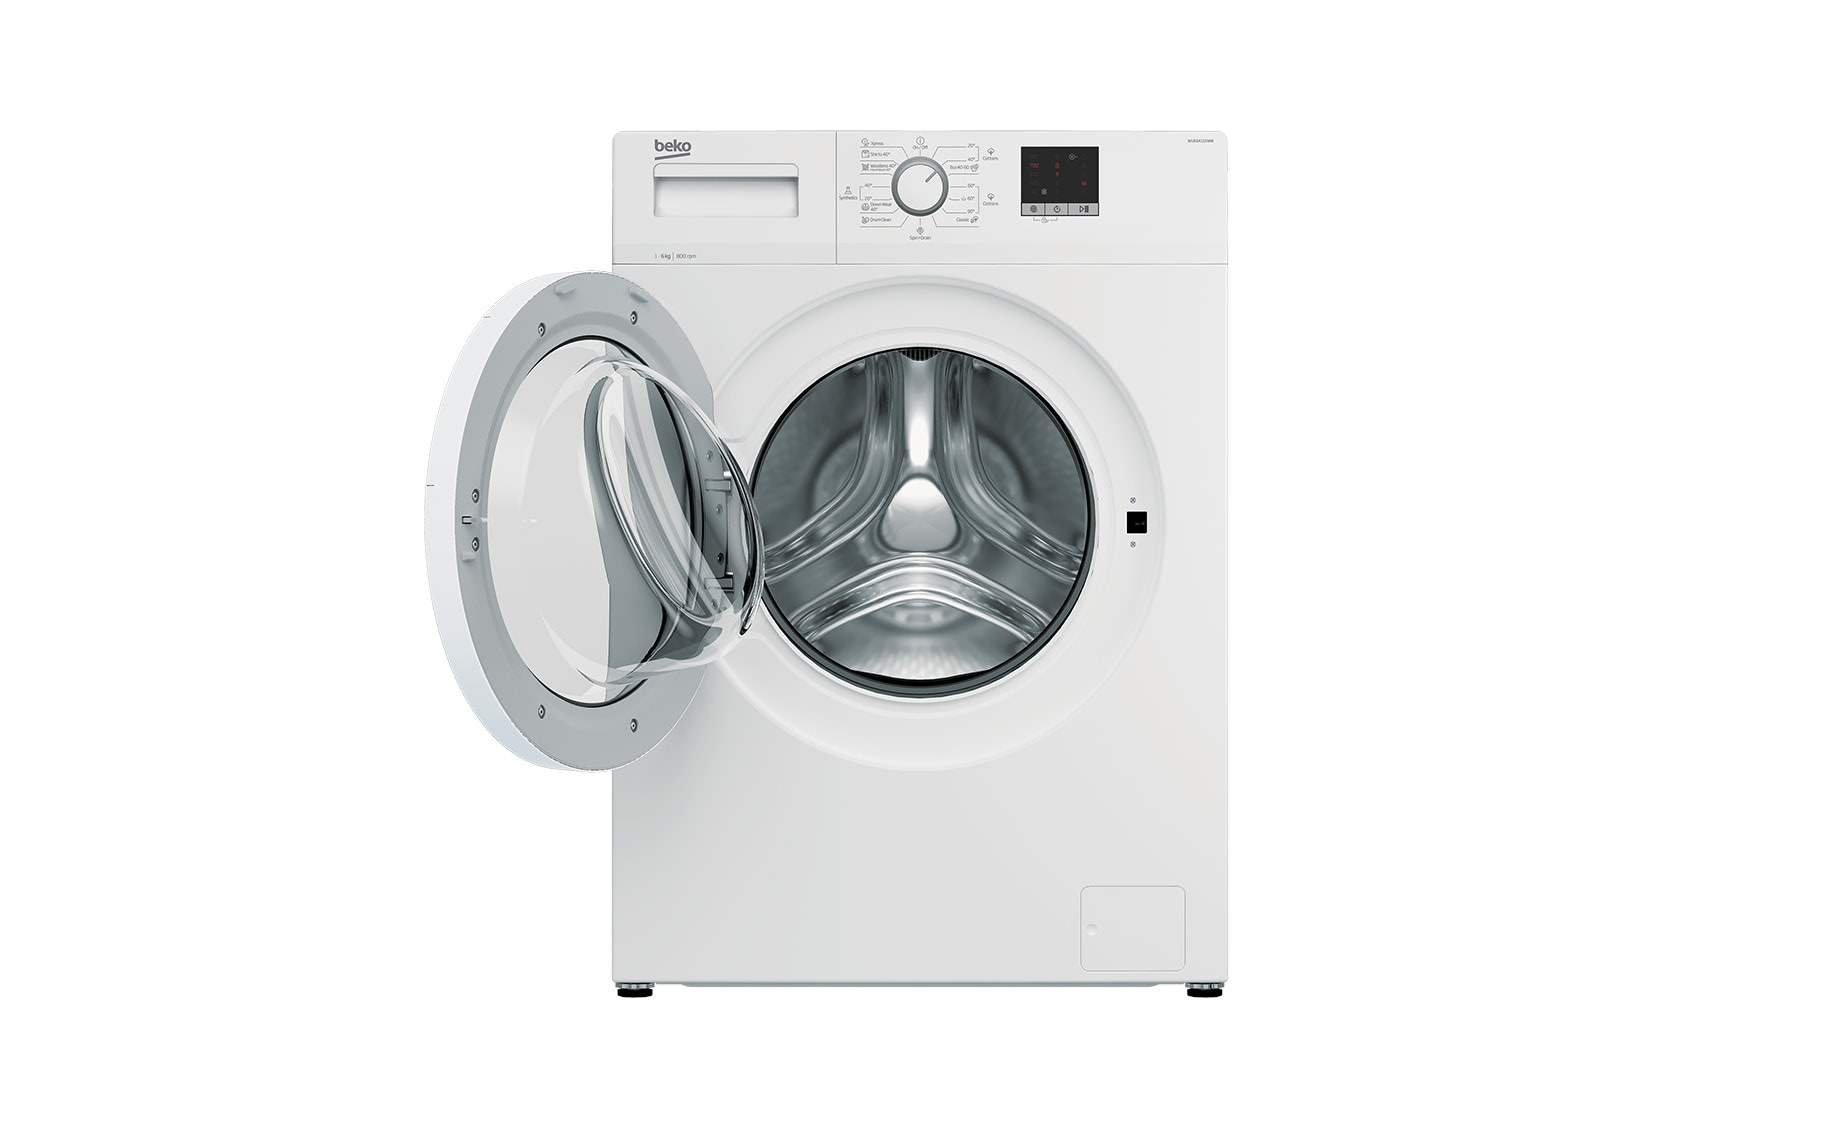 Beko WUE 6411 XWW mašina za pranje veša